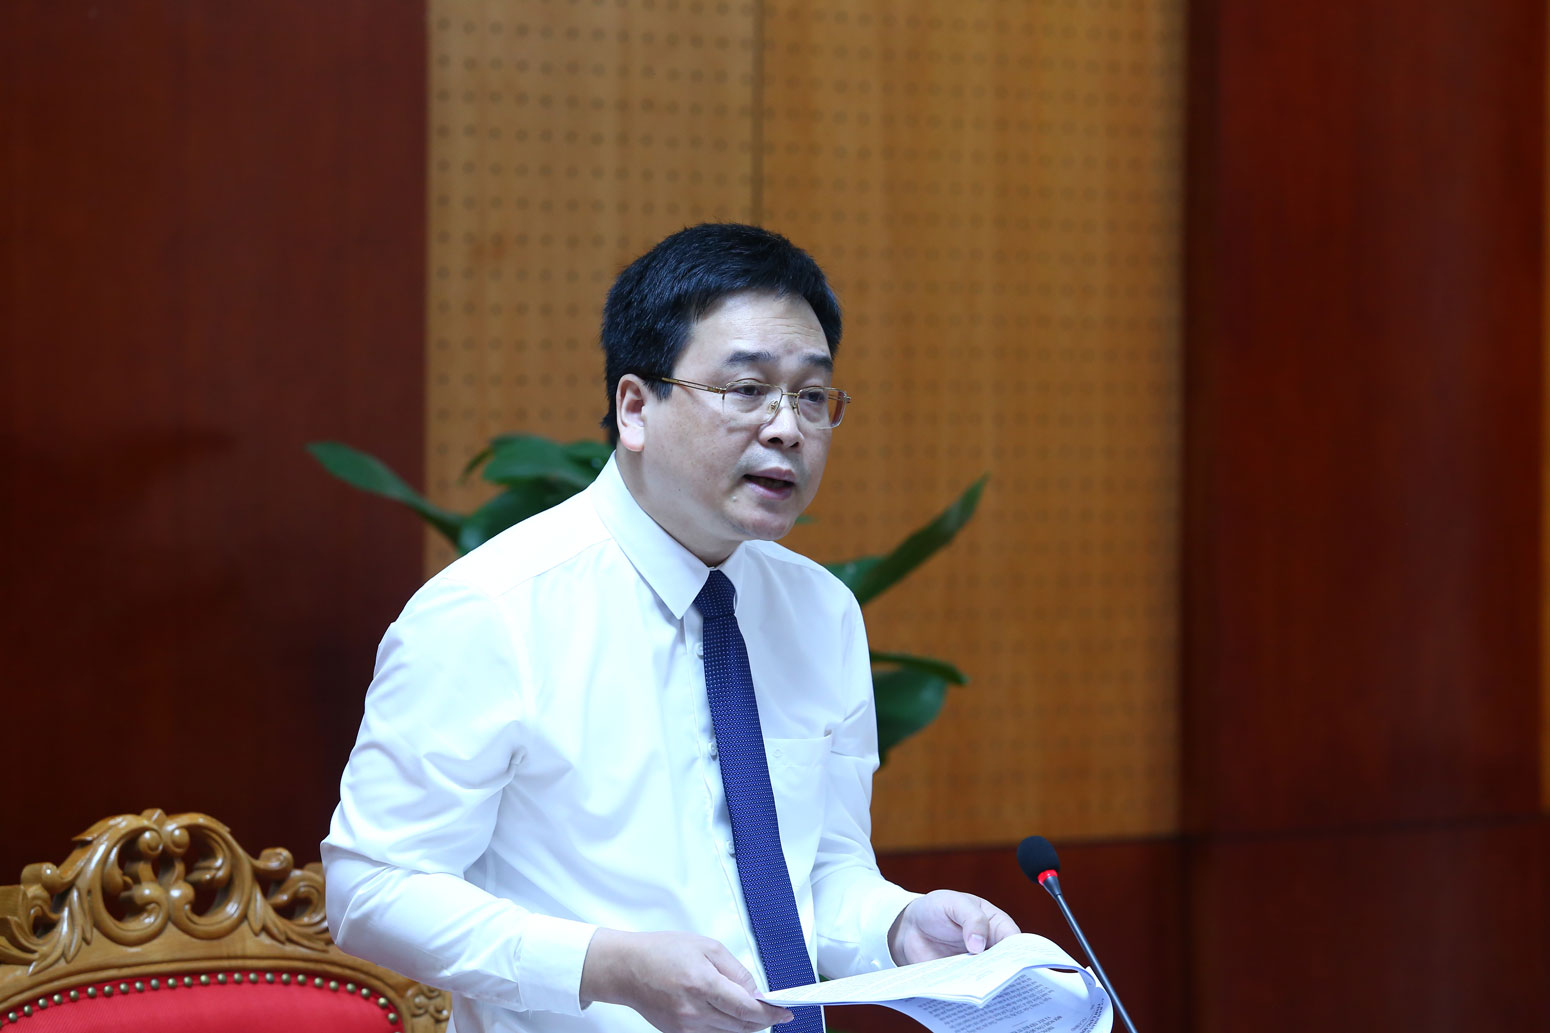 Giám đốc Sở Kế hoạch và Đầu tư tỉnh Lạng Sơn Vũ Hoàng Quý phát biểu tại hội nghị. Ảnh: Cao Nguyên